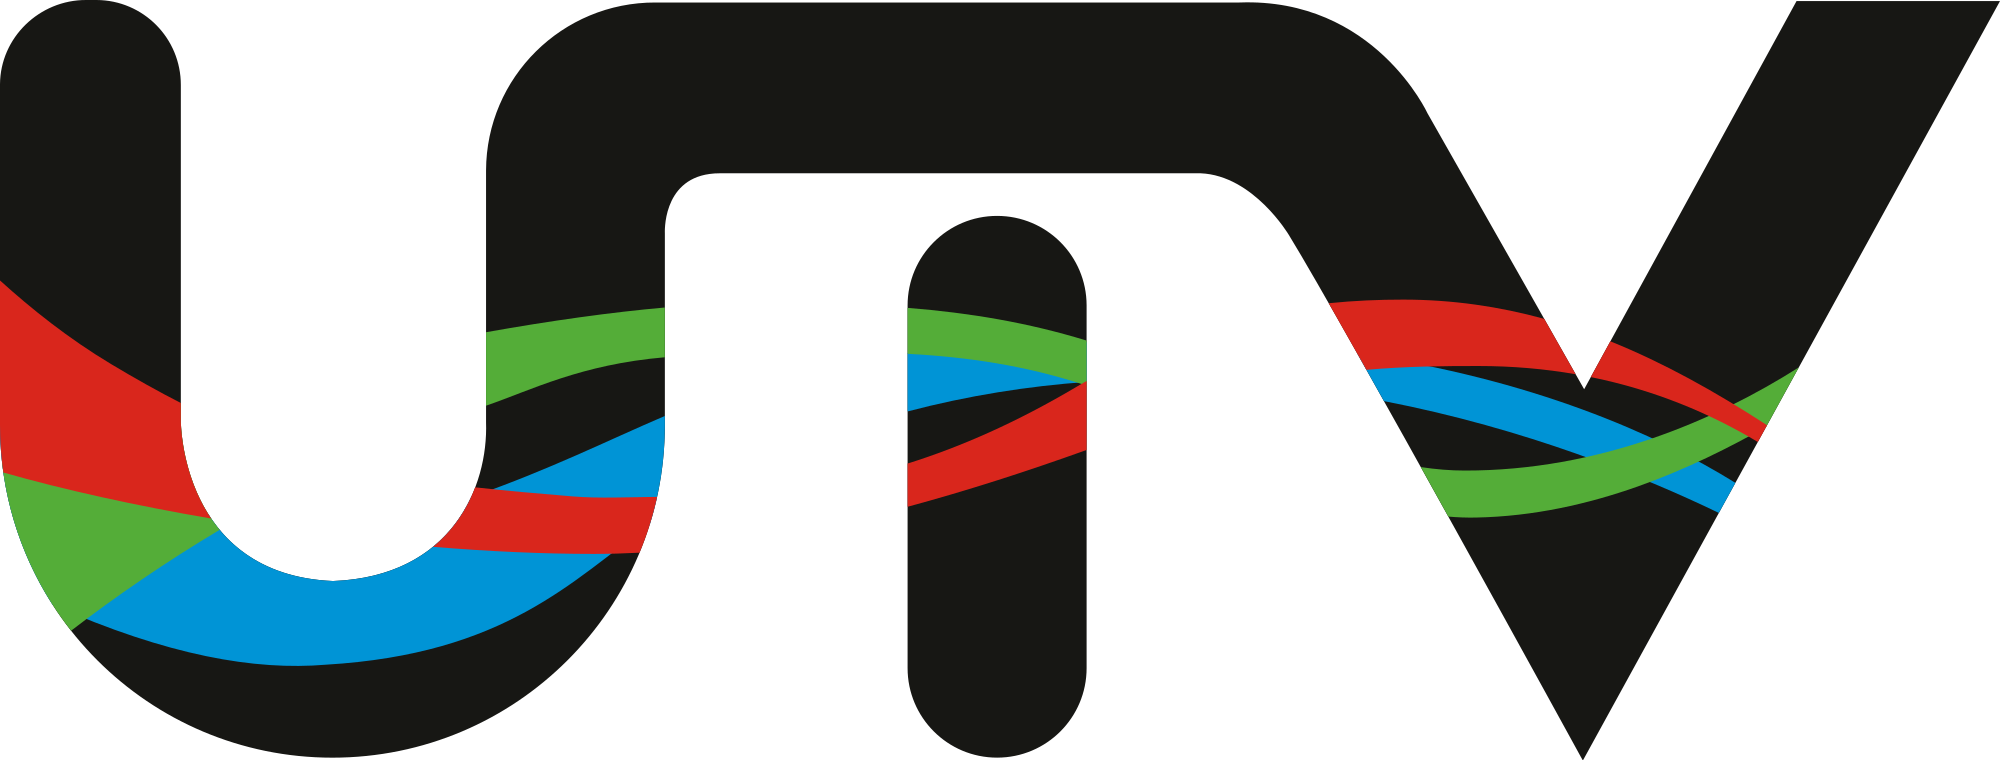 UTV Motion Pictures Logo